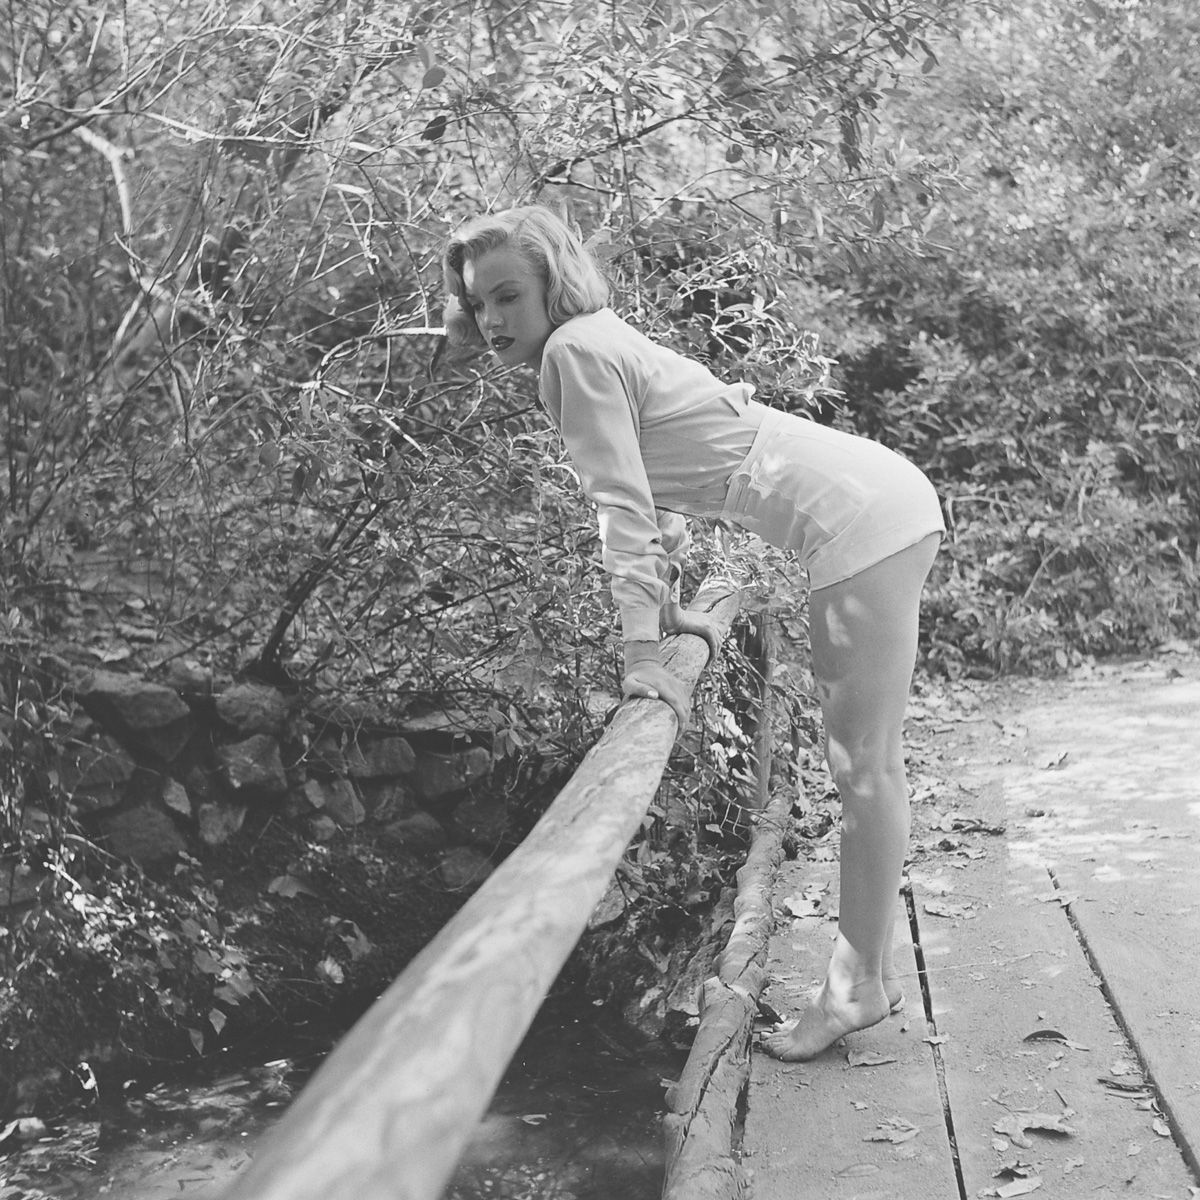 Fotos raras de Marilyn Monroe caminhando no bosque antes de ser famosa 10